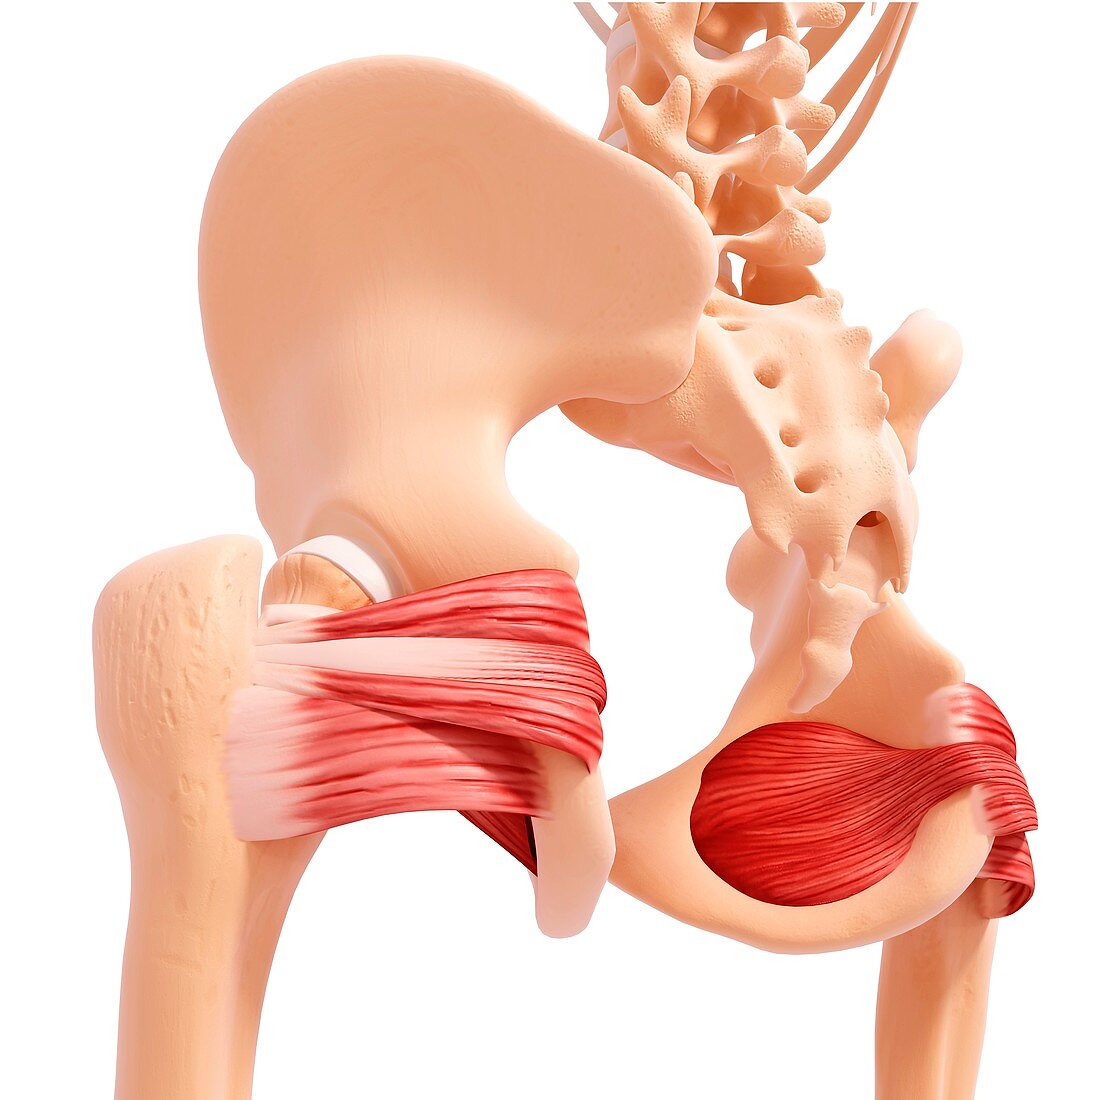 Human hip musculature,artwork